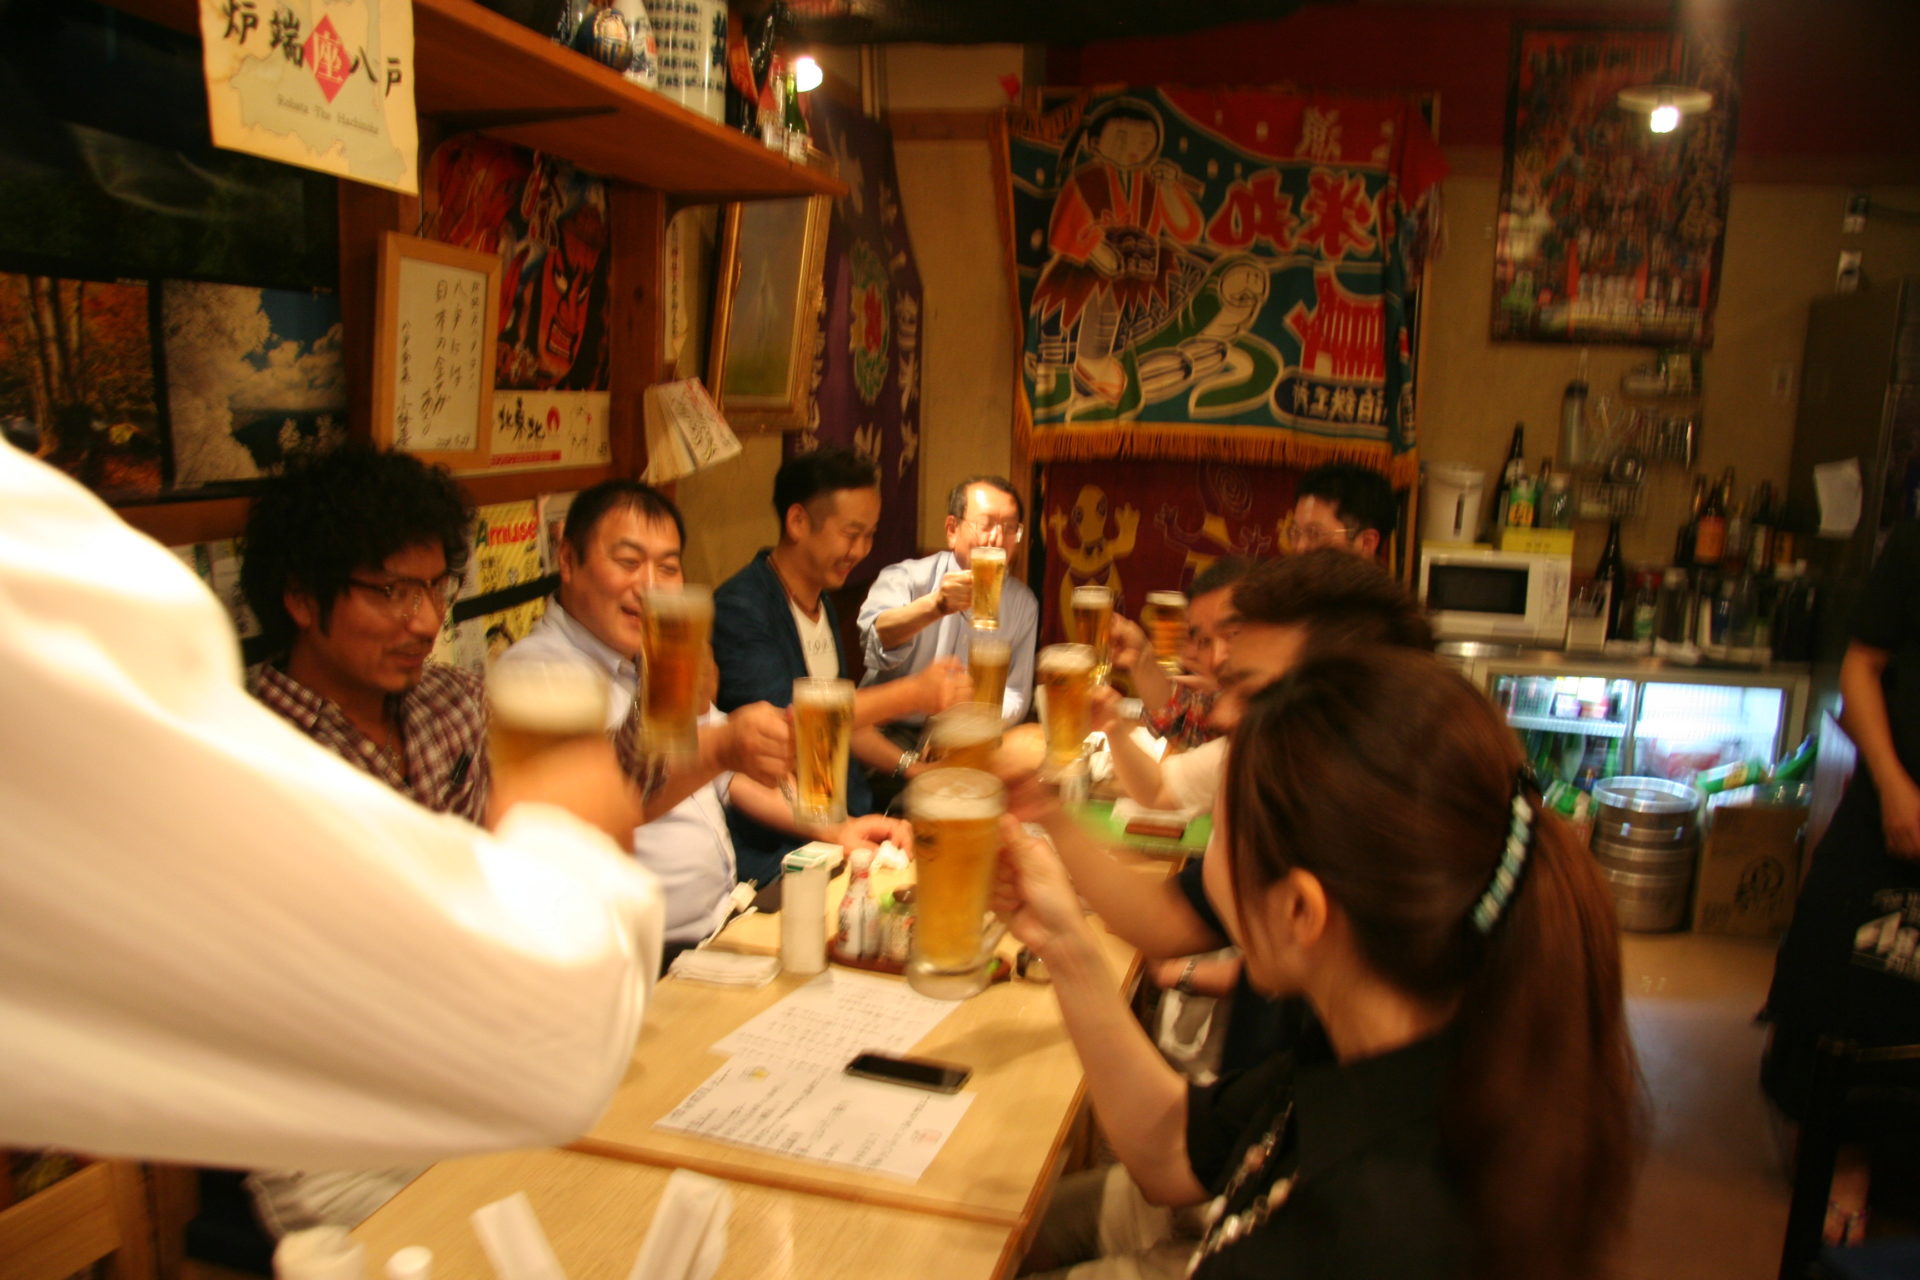 IMG 8886 1 1920x1280 - 2015年6月15日 AOsuki定例飲み会開催しました。